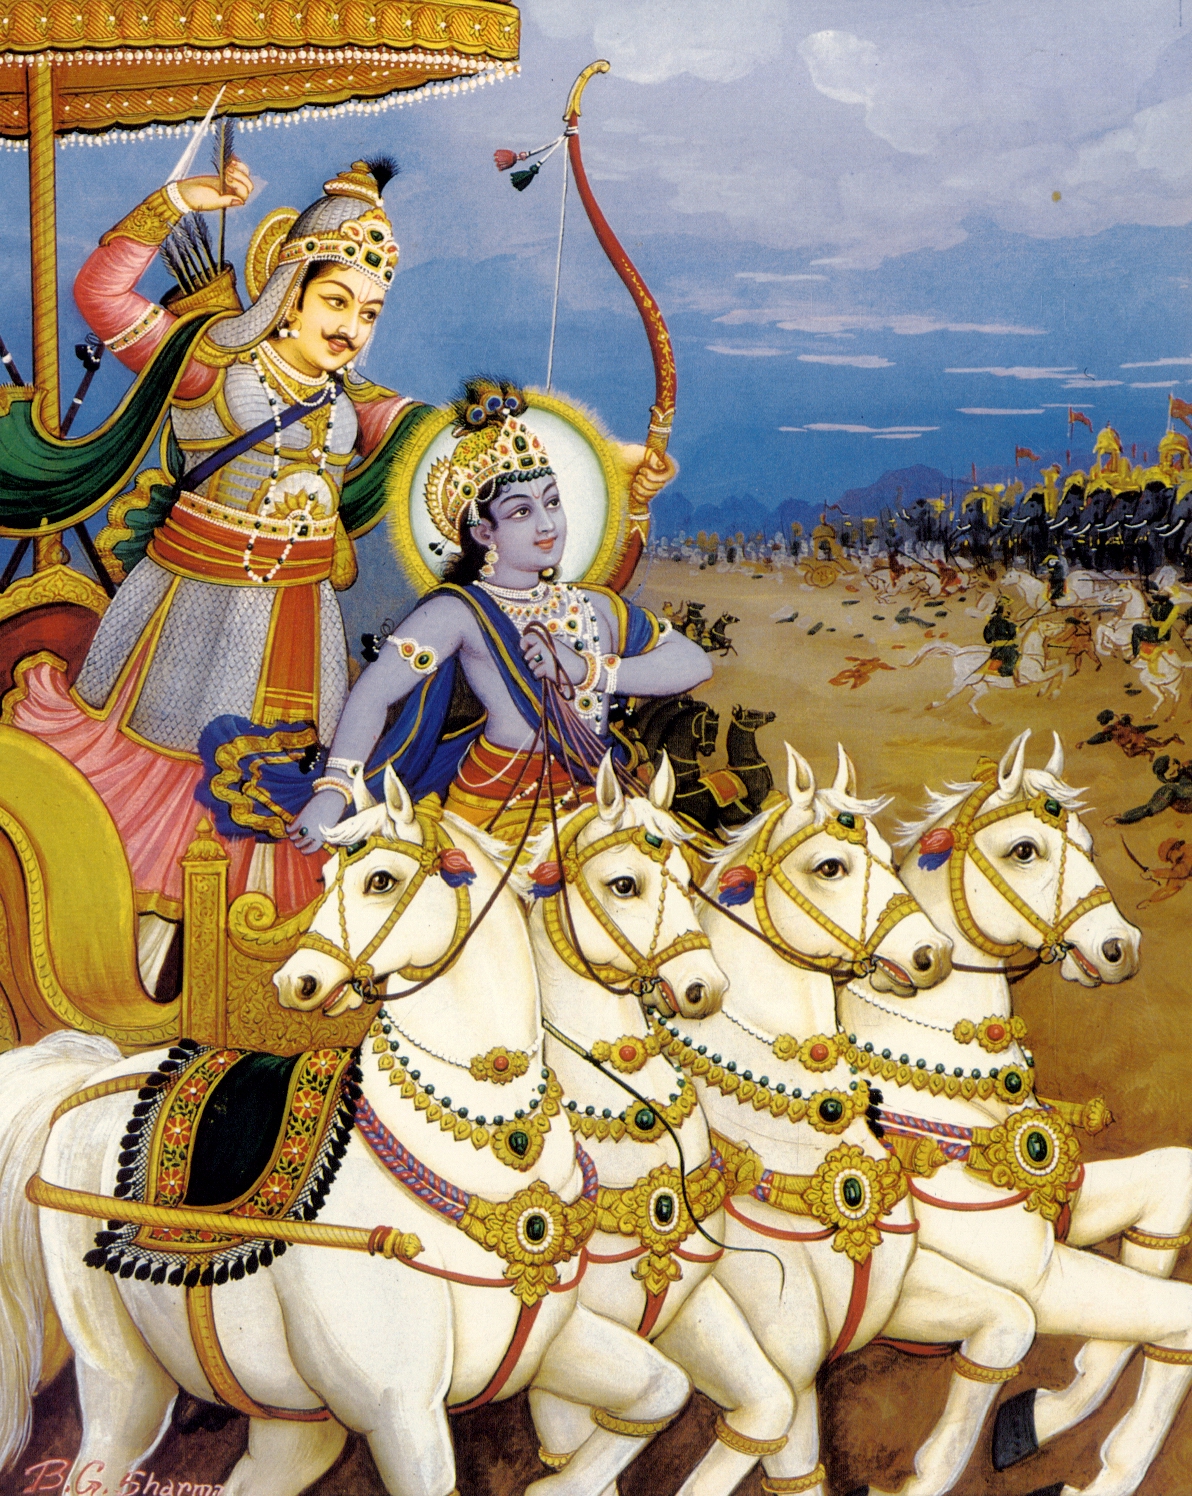 Arjuna | The Hare Krishna Movement